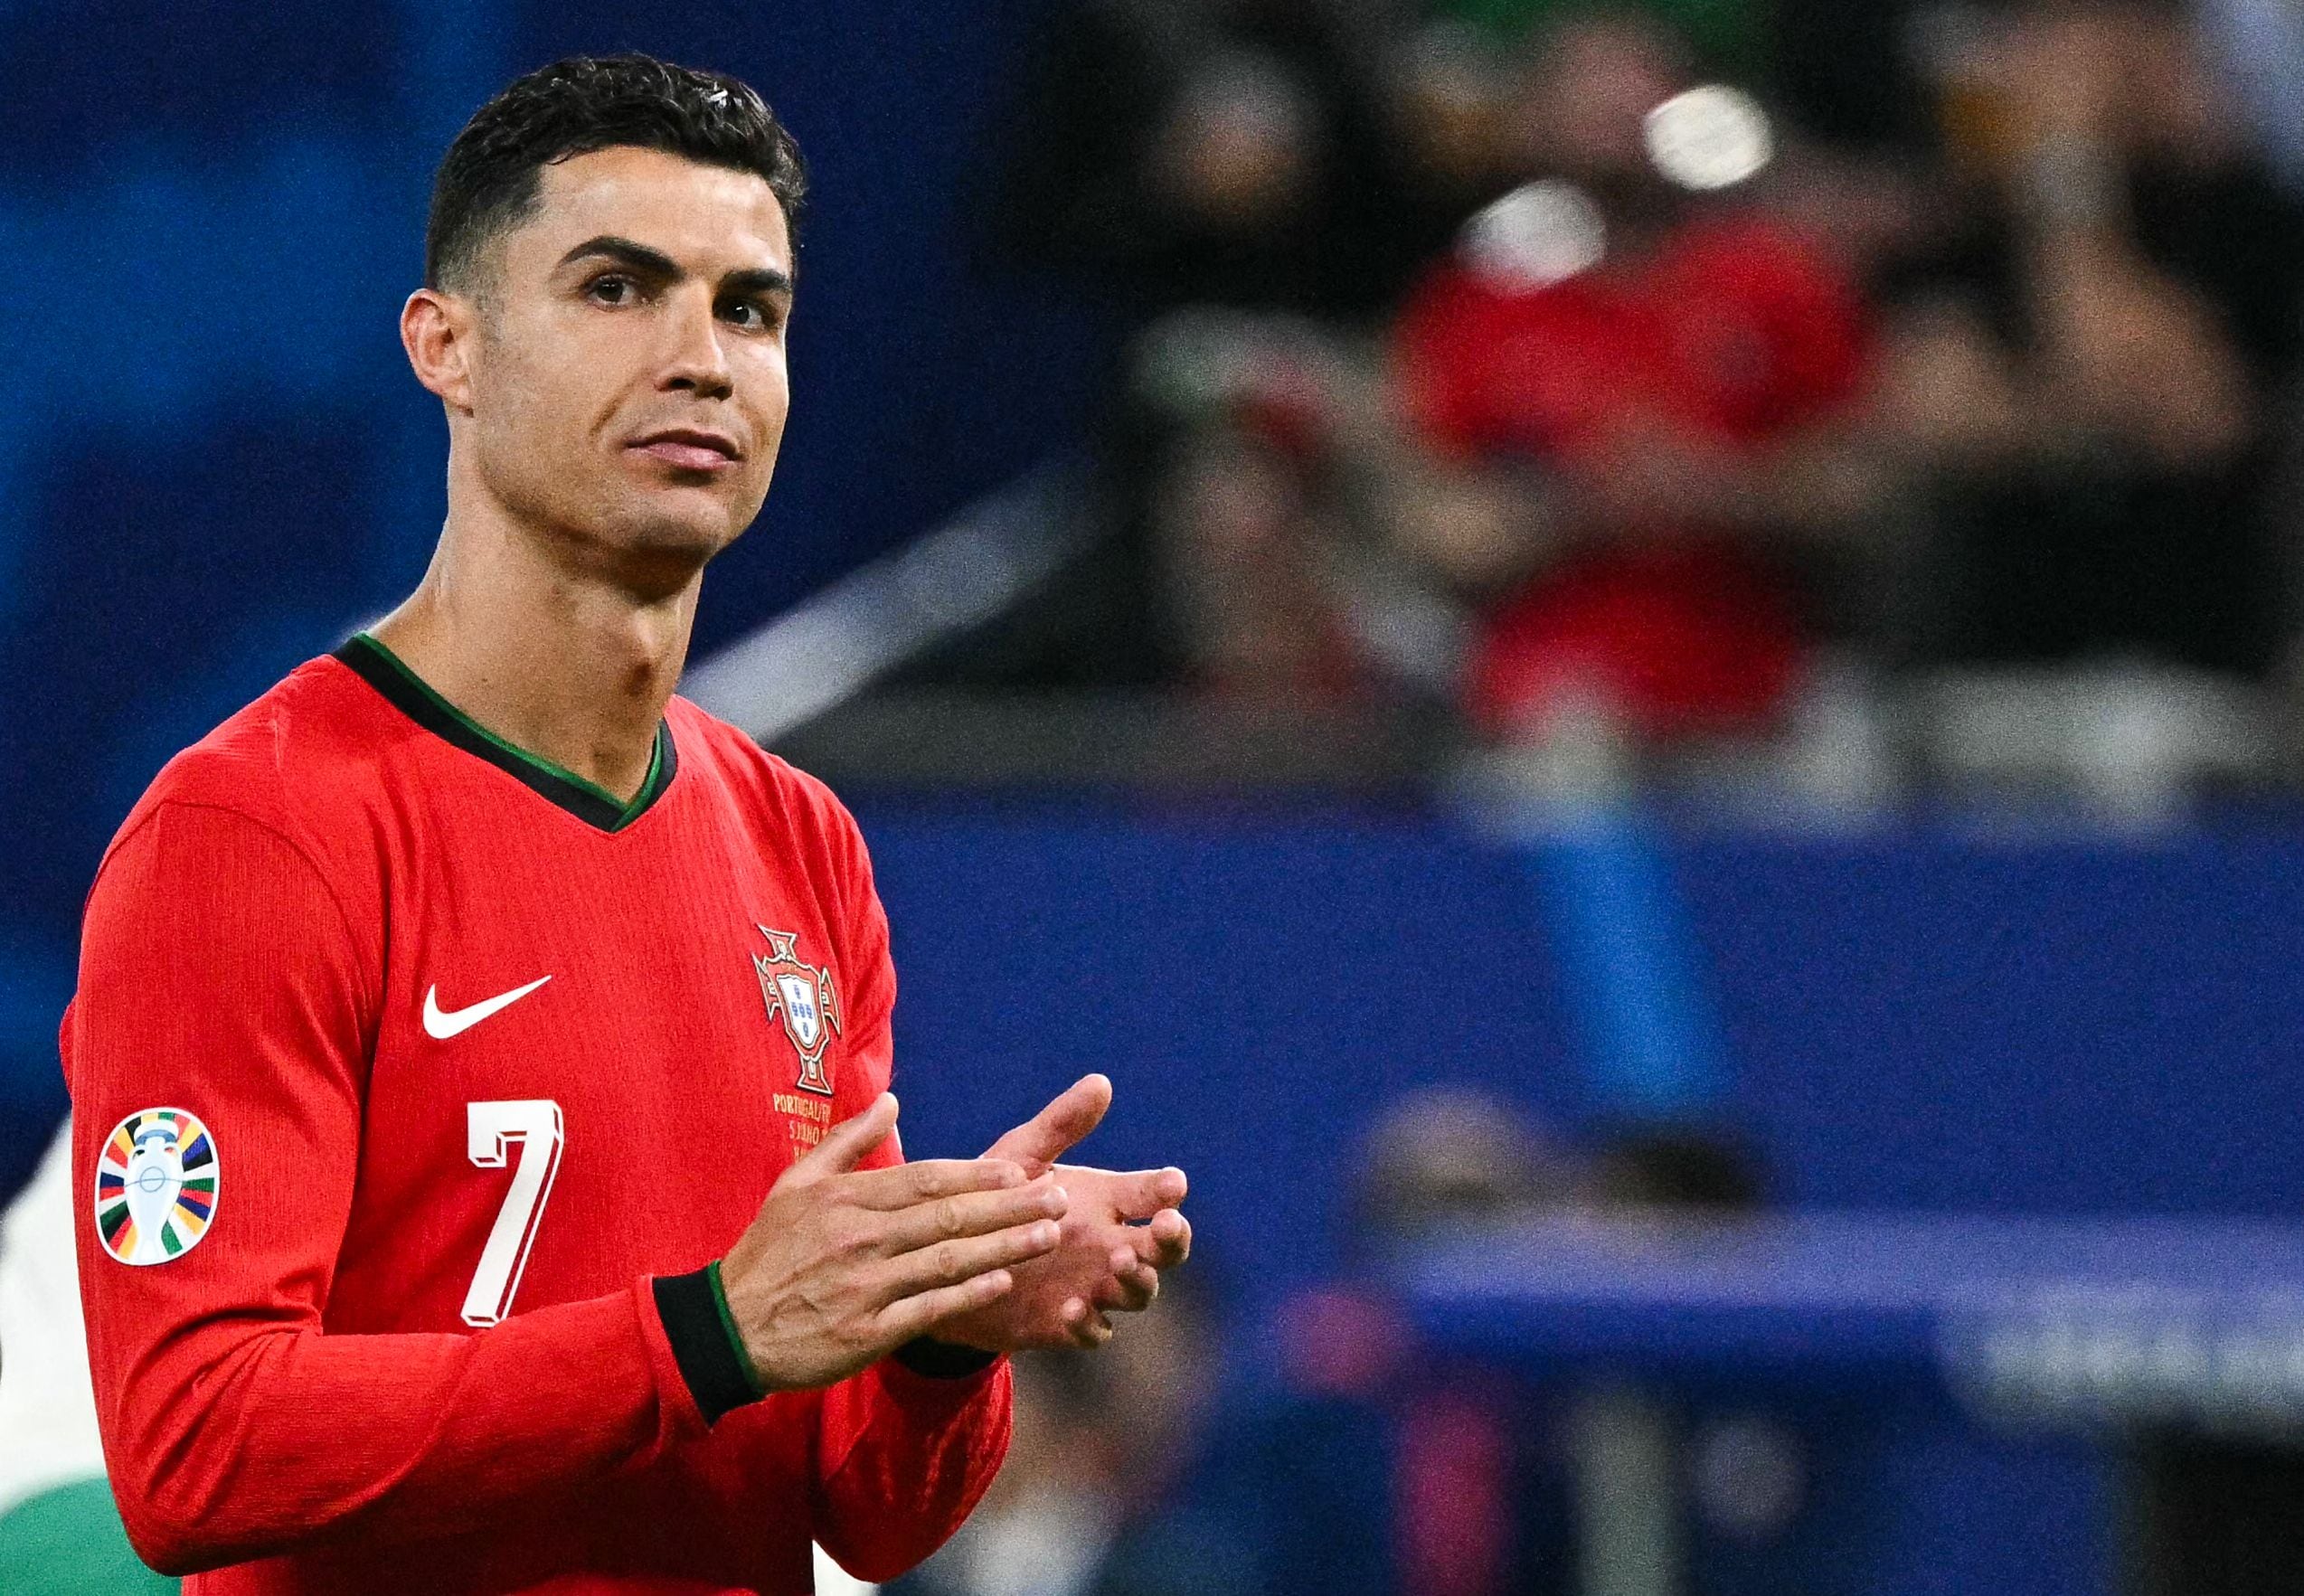 Portugal queda eliminado en la Eurocopa 2024 tras perder en penales contra Francia. Cristiano Ronaldo y Pepe se despiden emotivamente.